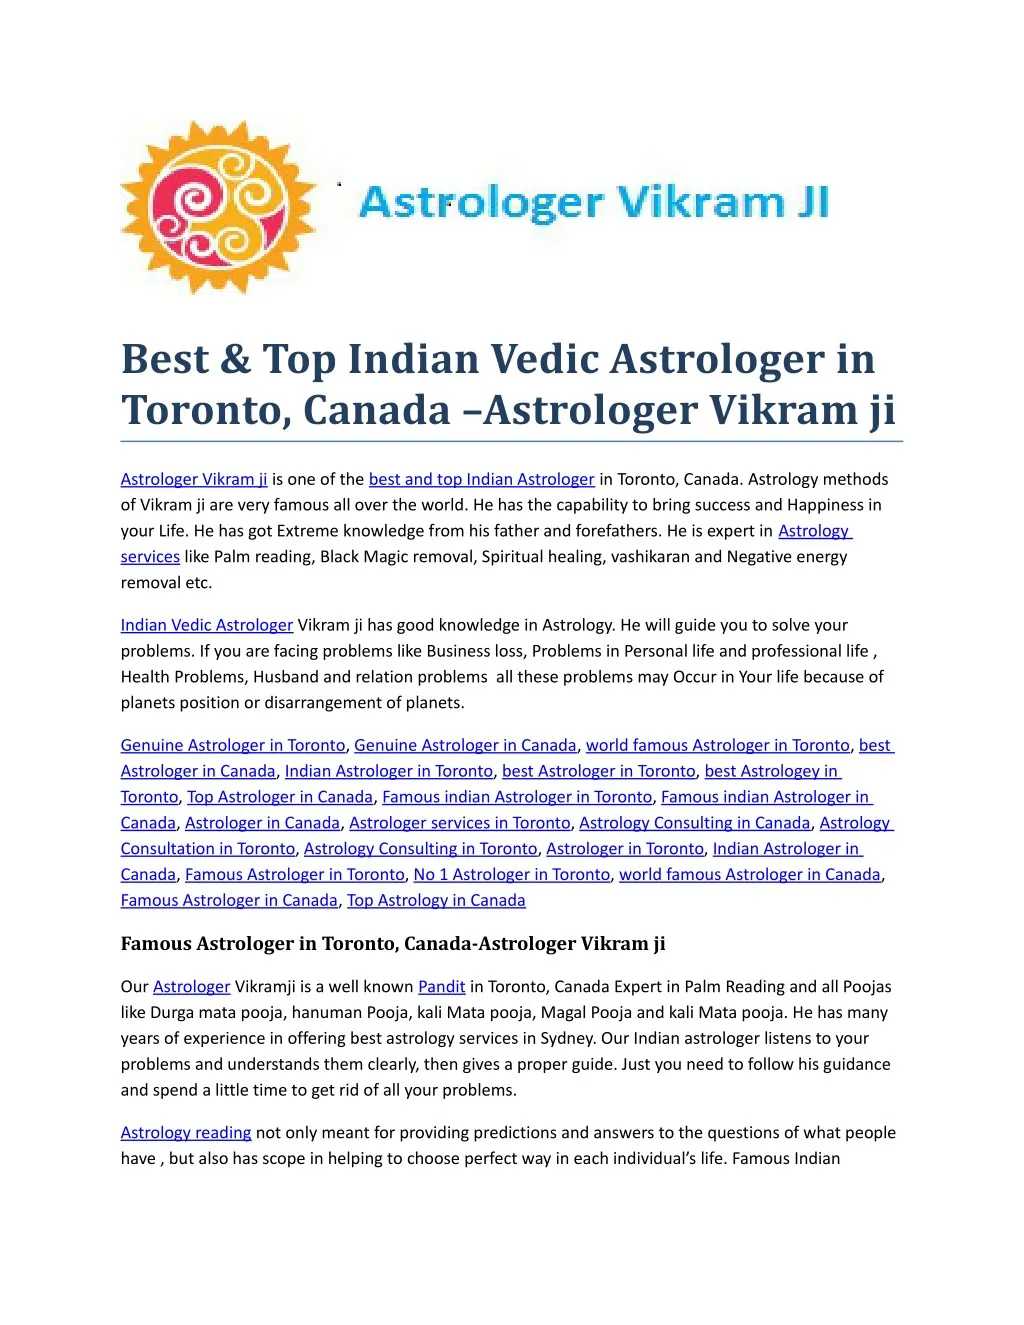 best top indian vedic astrologer in toronto